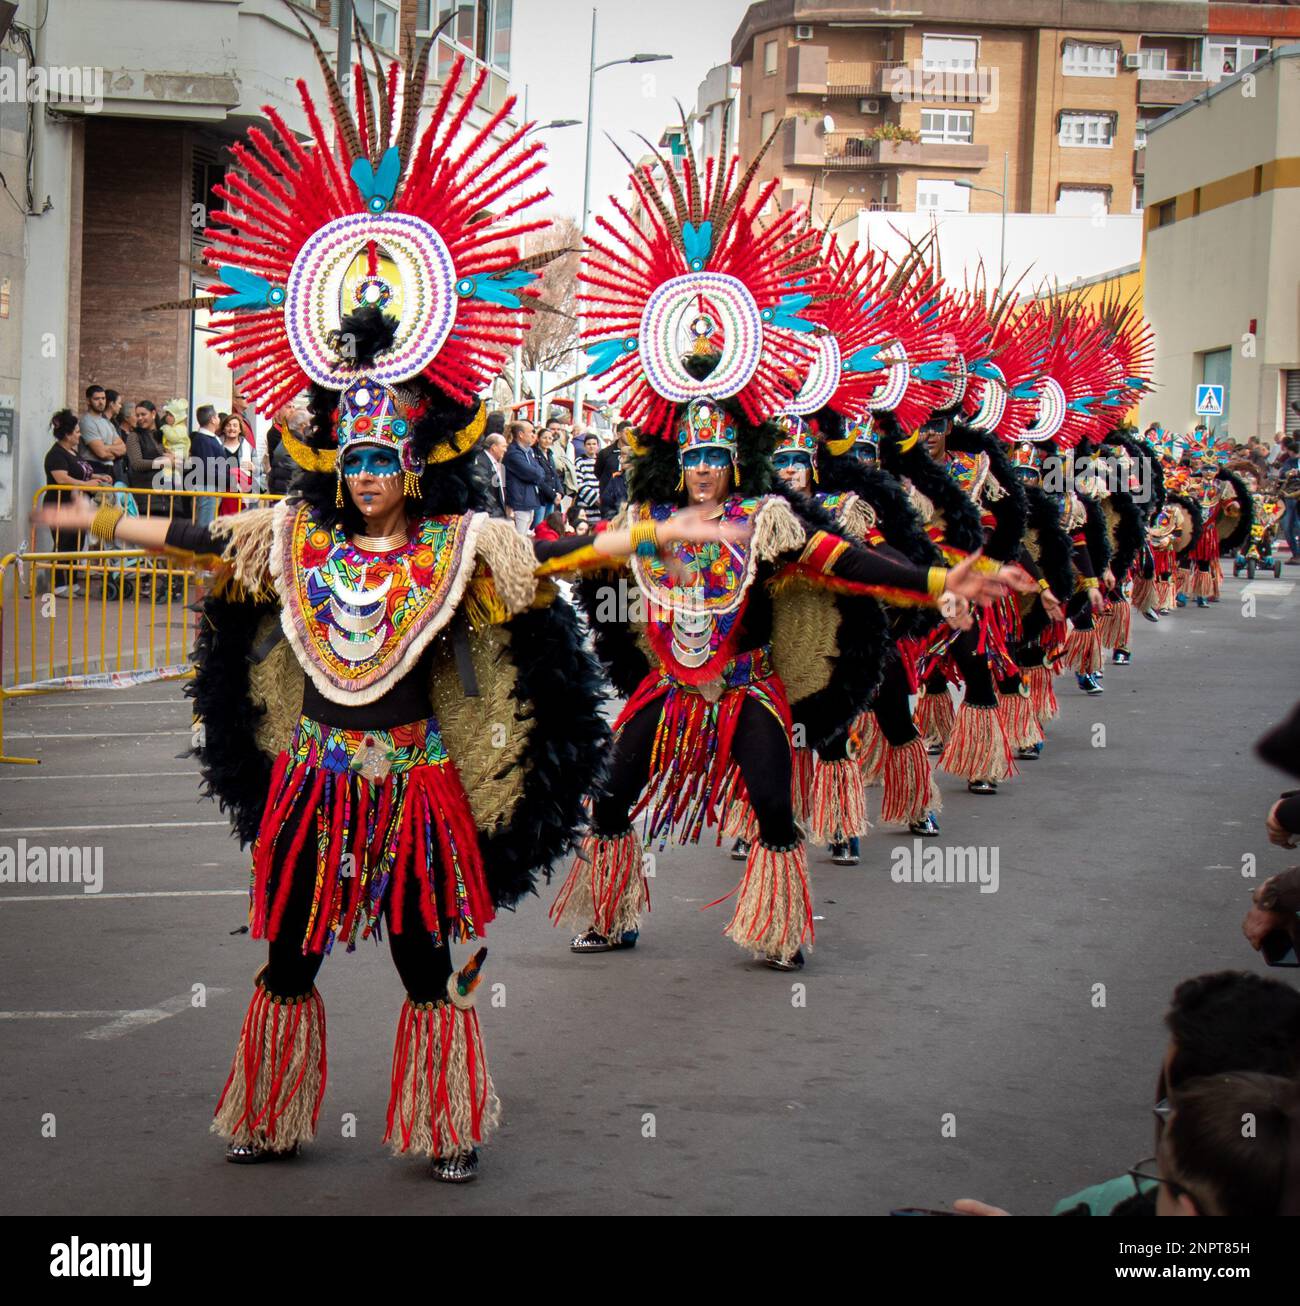 Gente feliz desfilando y bailando, con disfraces abstractos y coloridos en  el desfile de Carnaval de Navalmoral de la Mata, España Stock Photo - Alamy